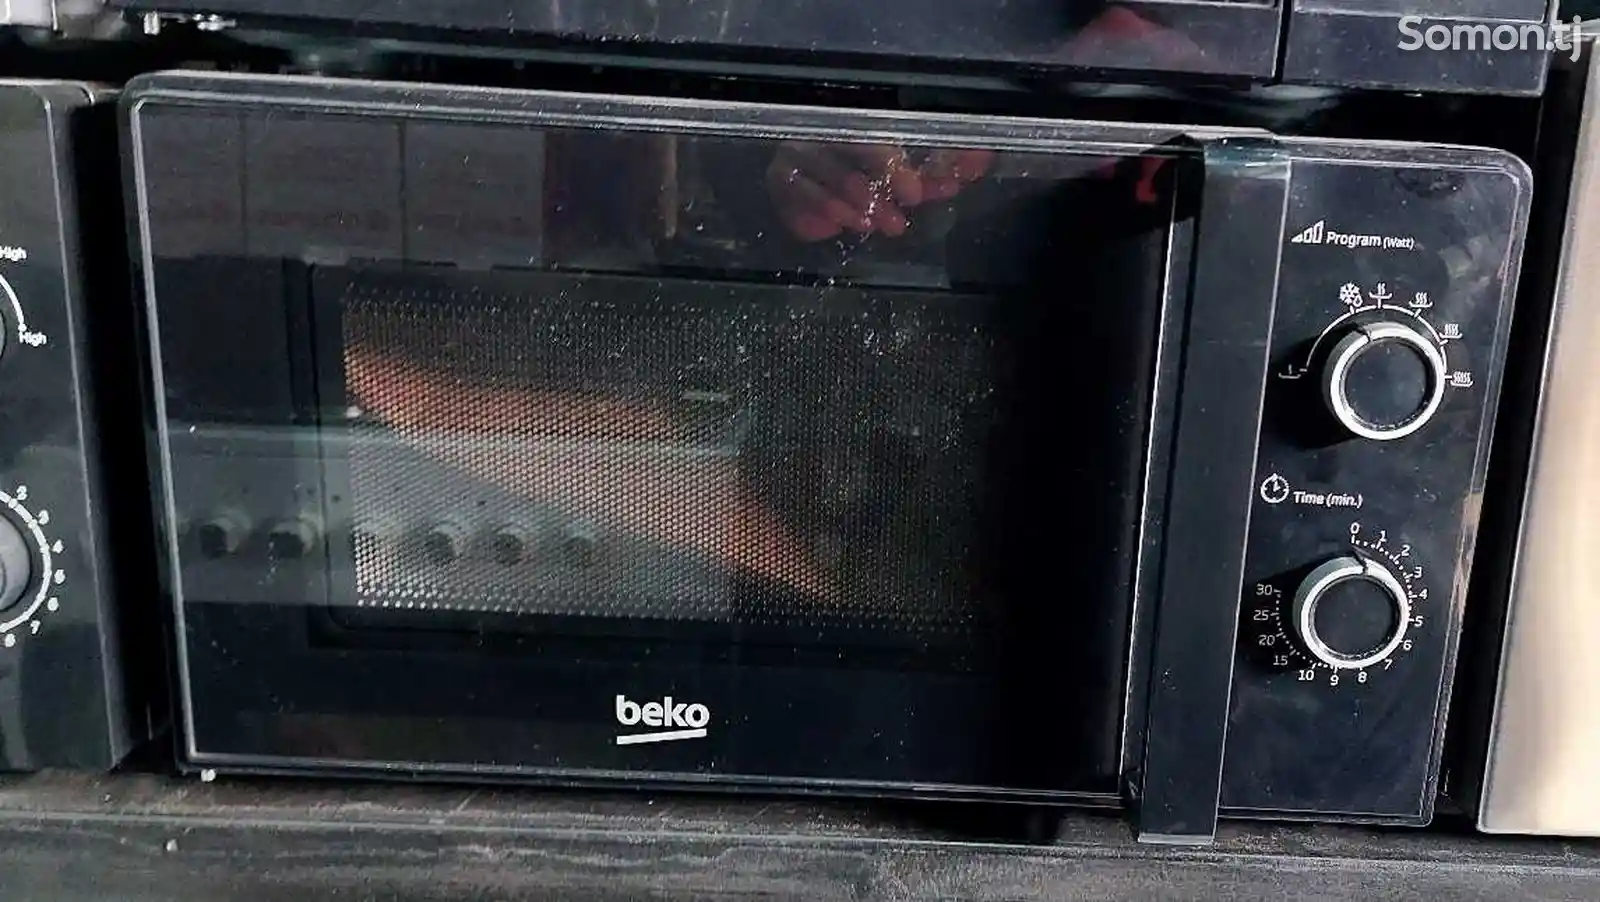 Микроволновая печь Beko-2